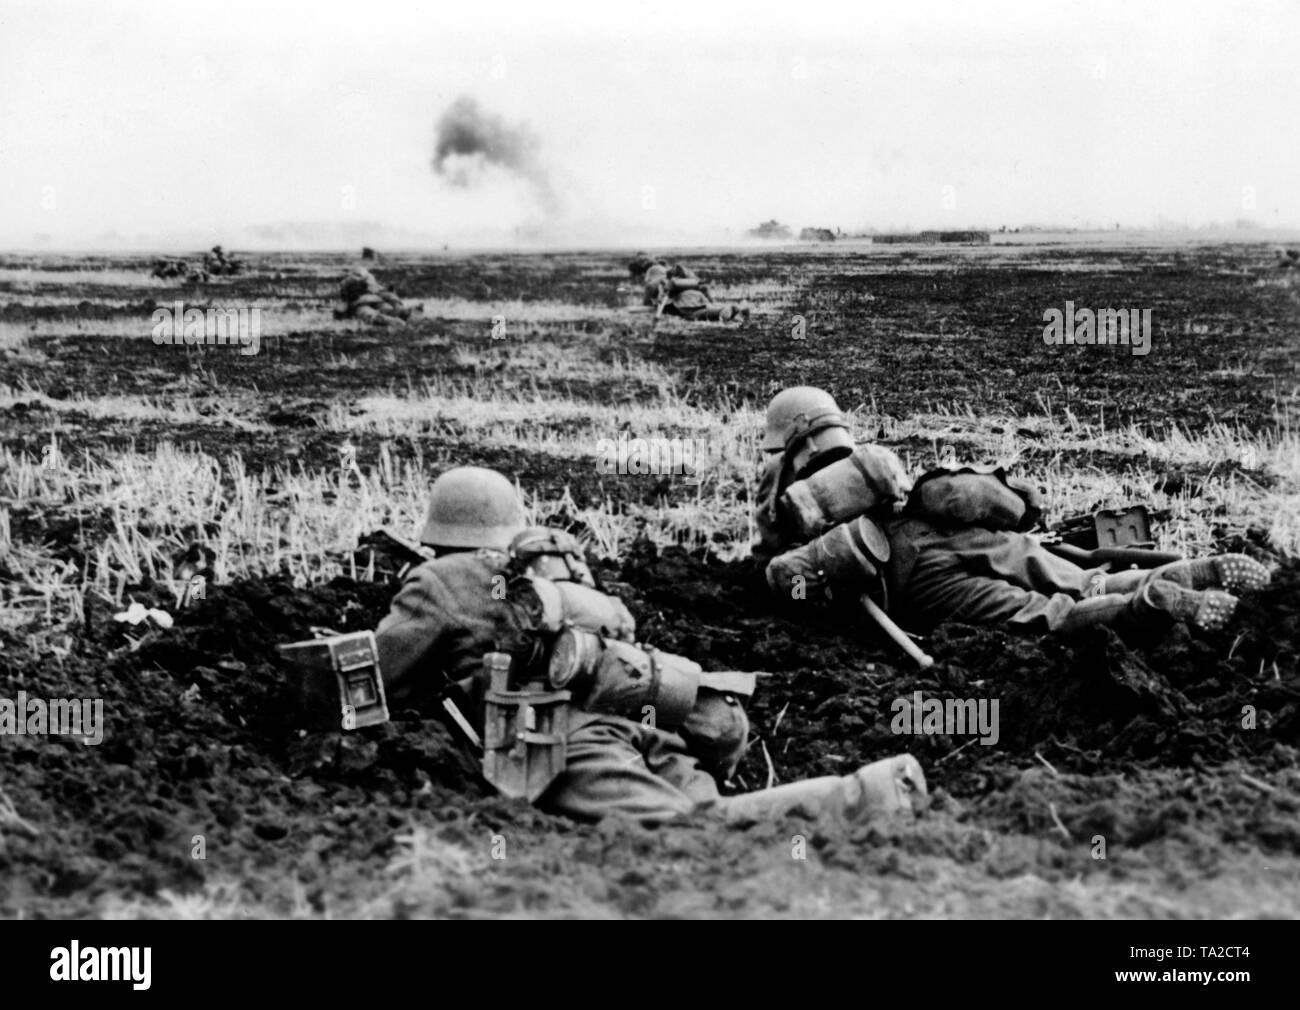 Les fantassins allemands se trouvent en position pendant le combat dans le champ ouvert à la Donets'avant. La fumée monte dans l'arrière-plan. Correspondant de guerre : Herber. Banque D'Images